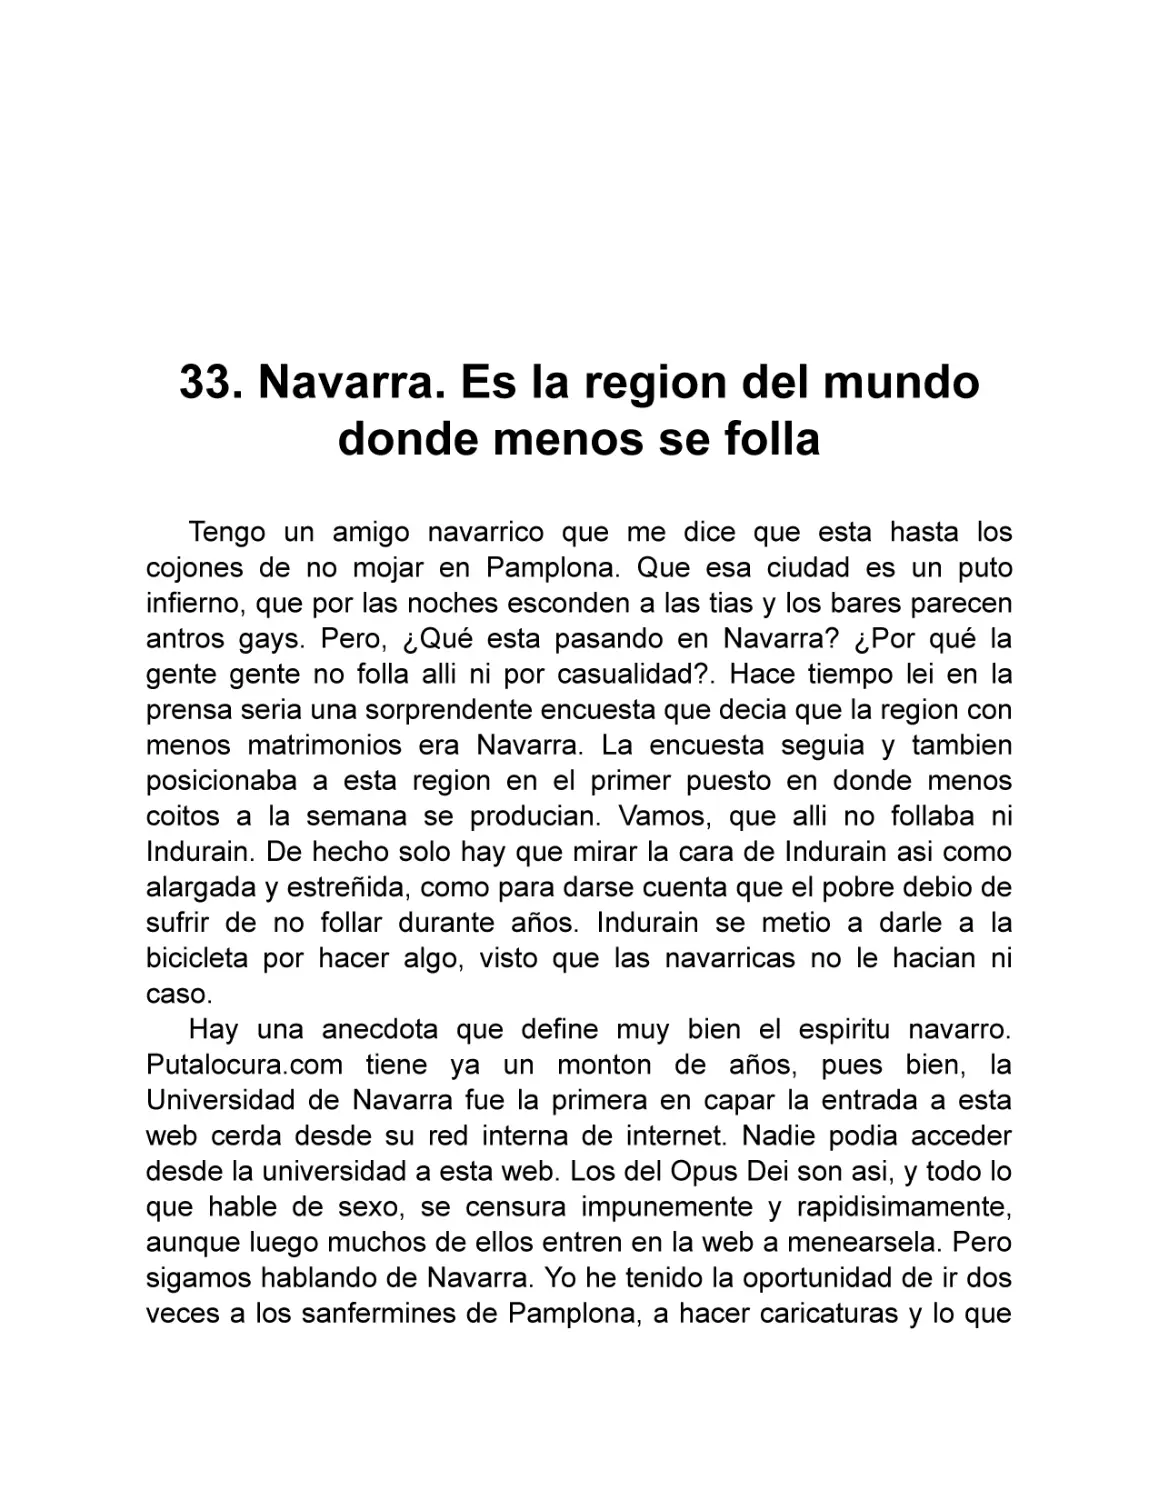 33. Navarra. Es la region del mundo donde menos se folla